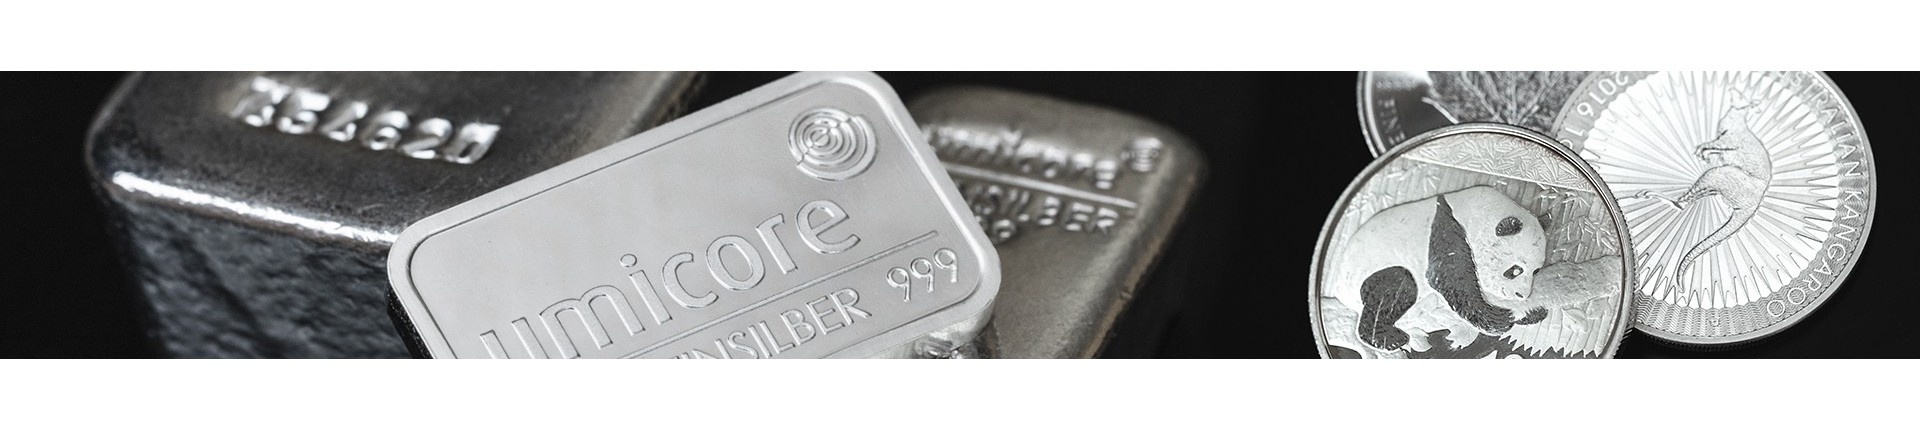 Zilver kopen? | Veilig & betrouwbaar | Goudwisselkantoor